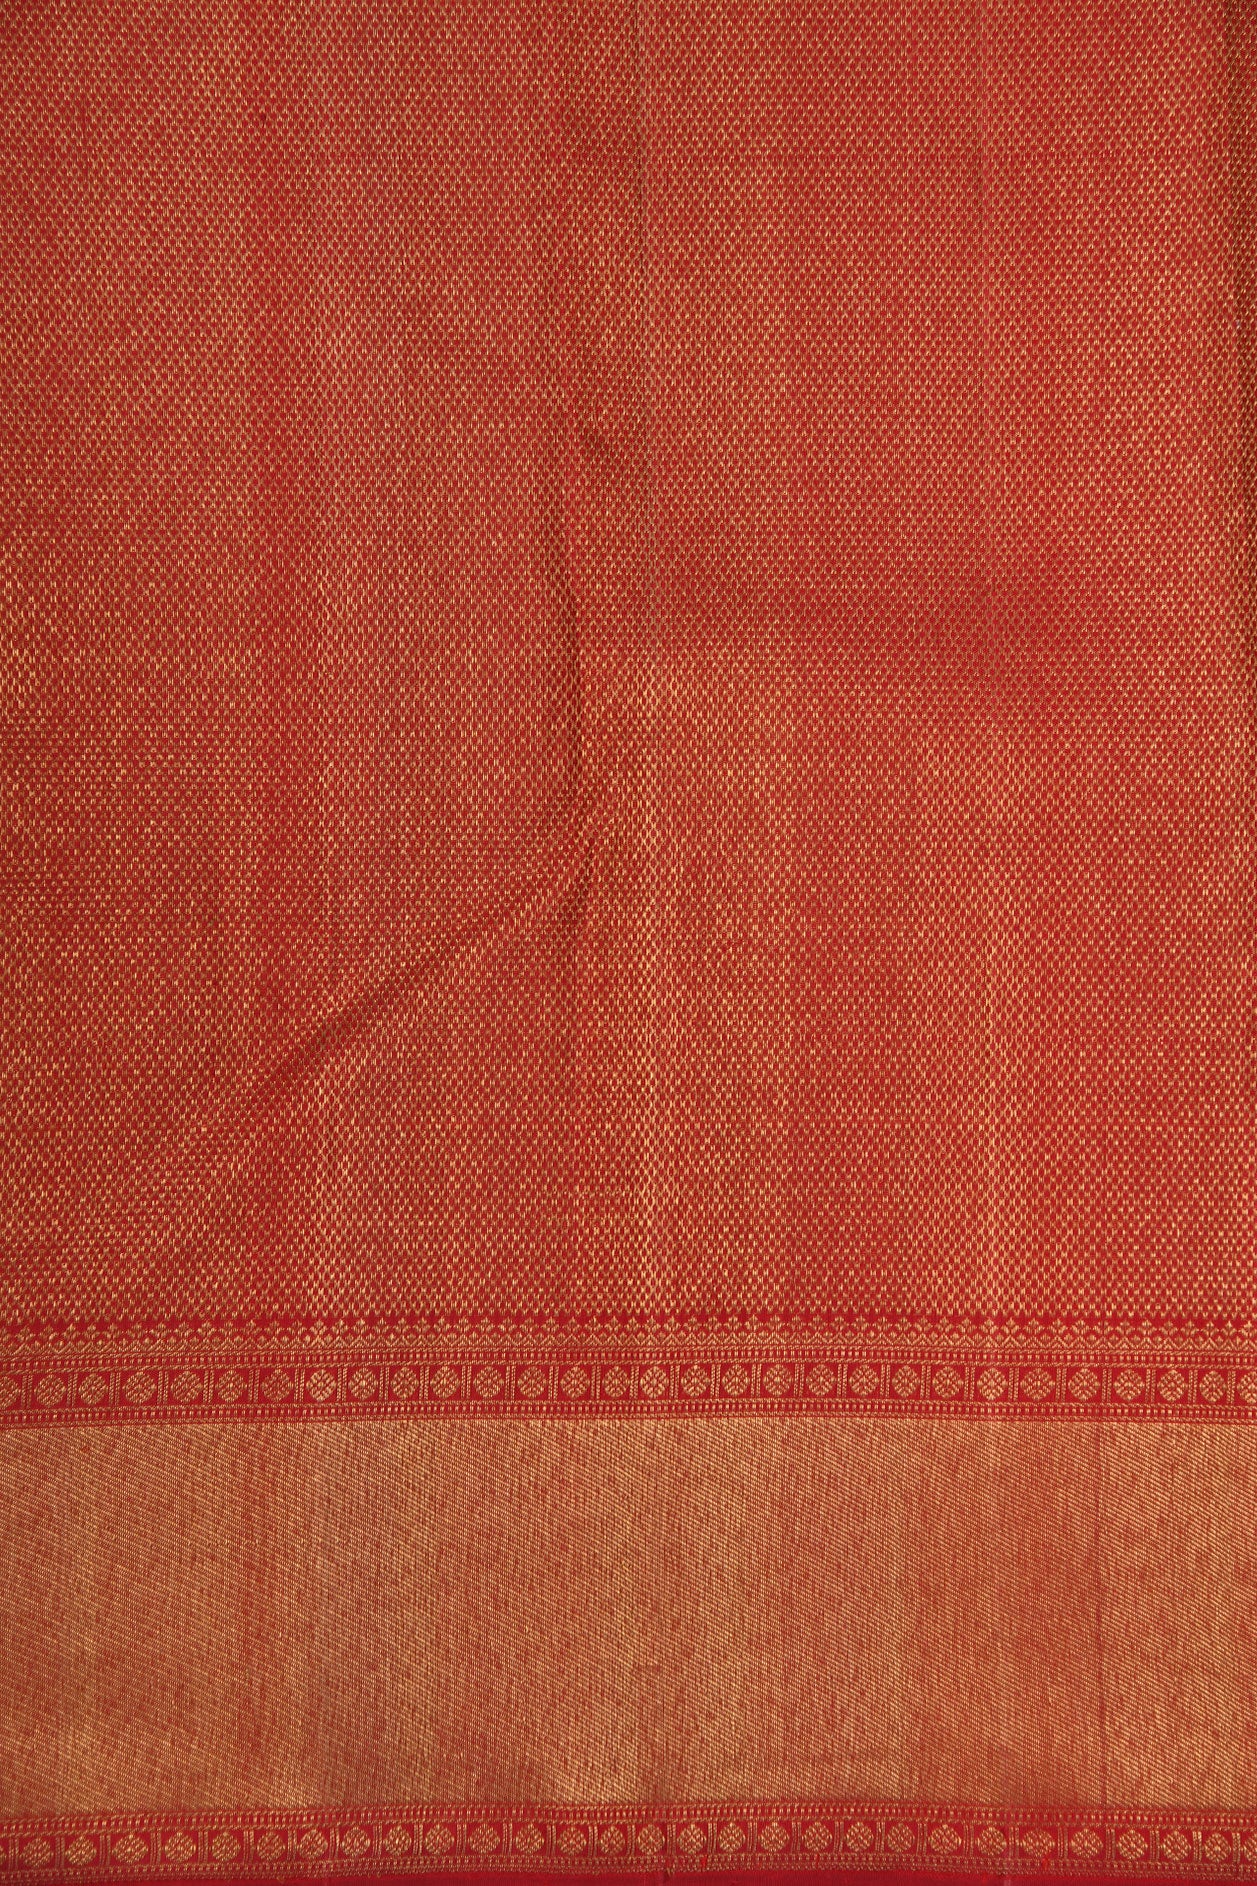 Twill Weave Border With Iruthalai Pakshi Design Maroon Kanchipuram Silk Saree